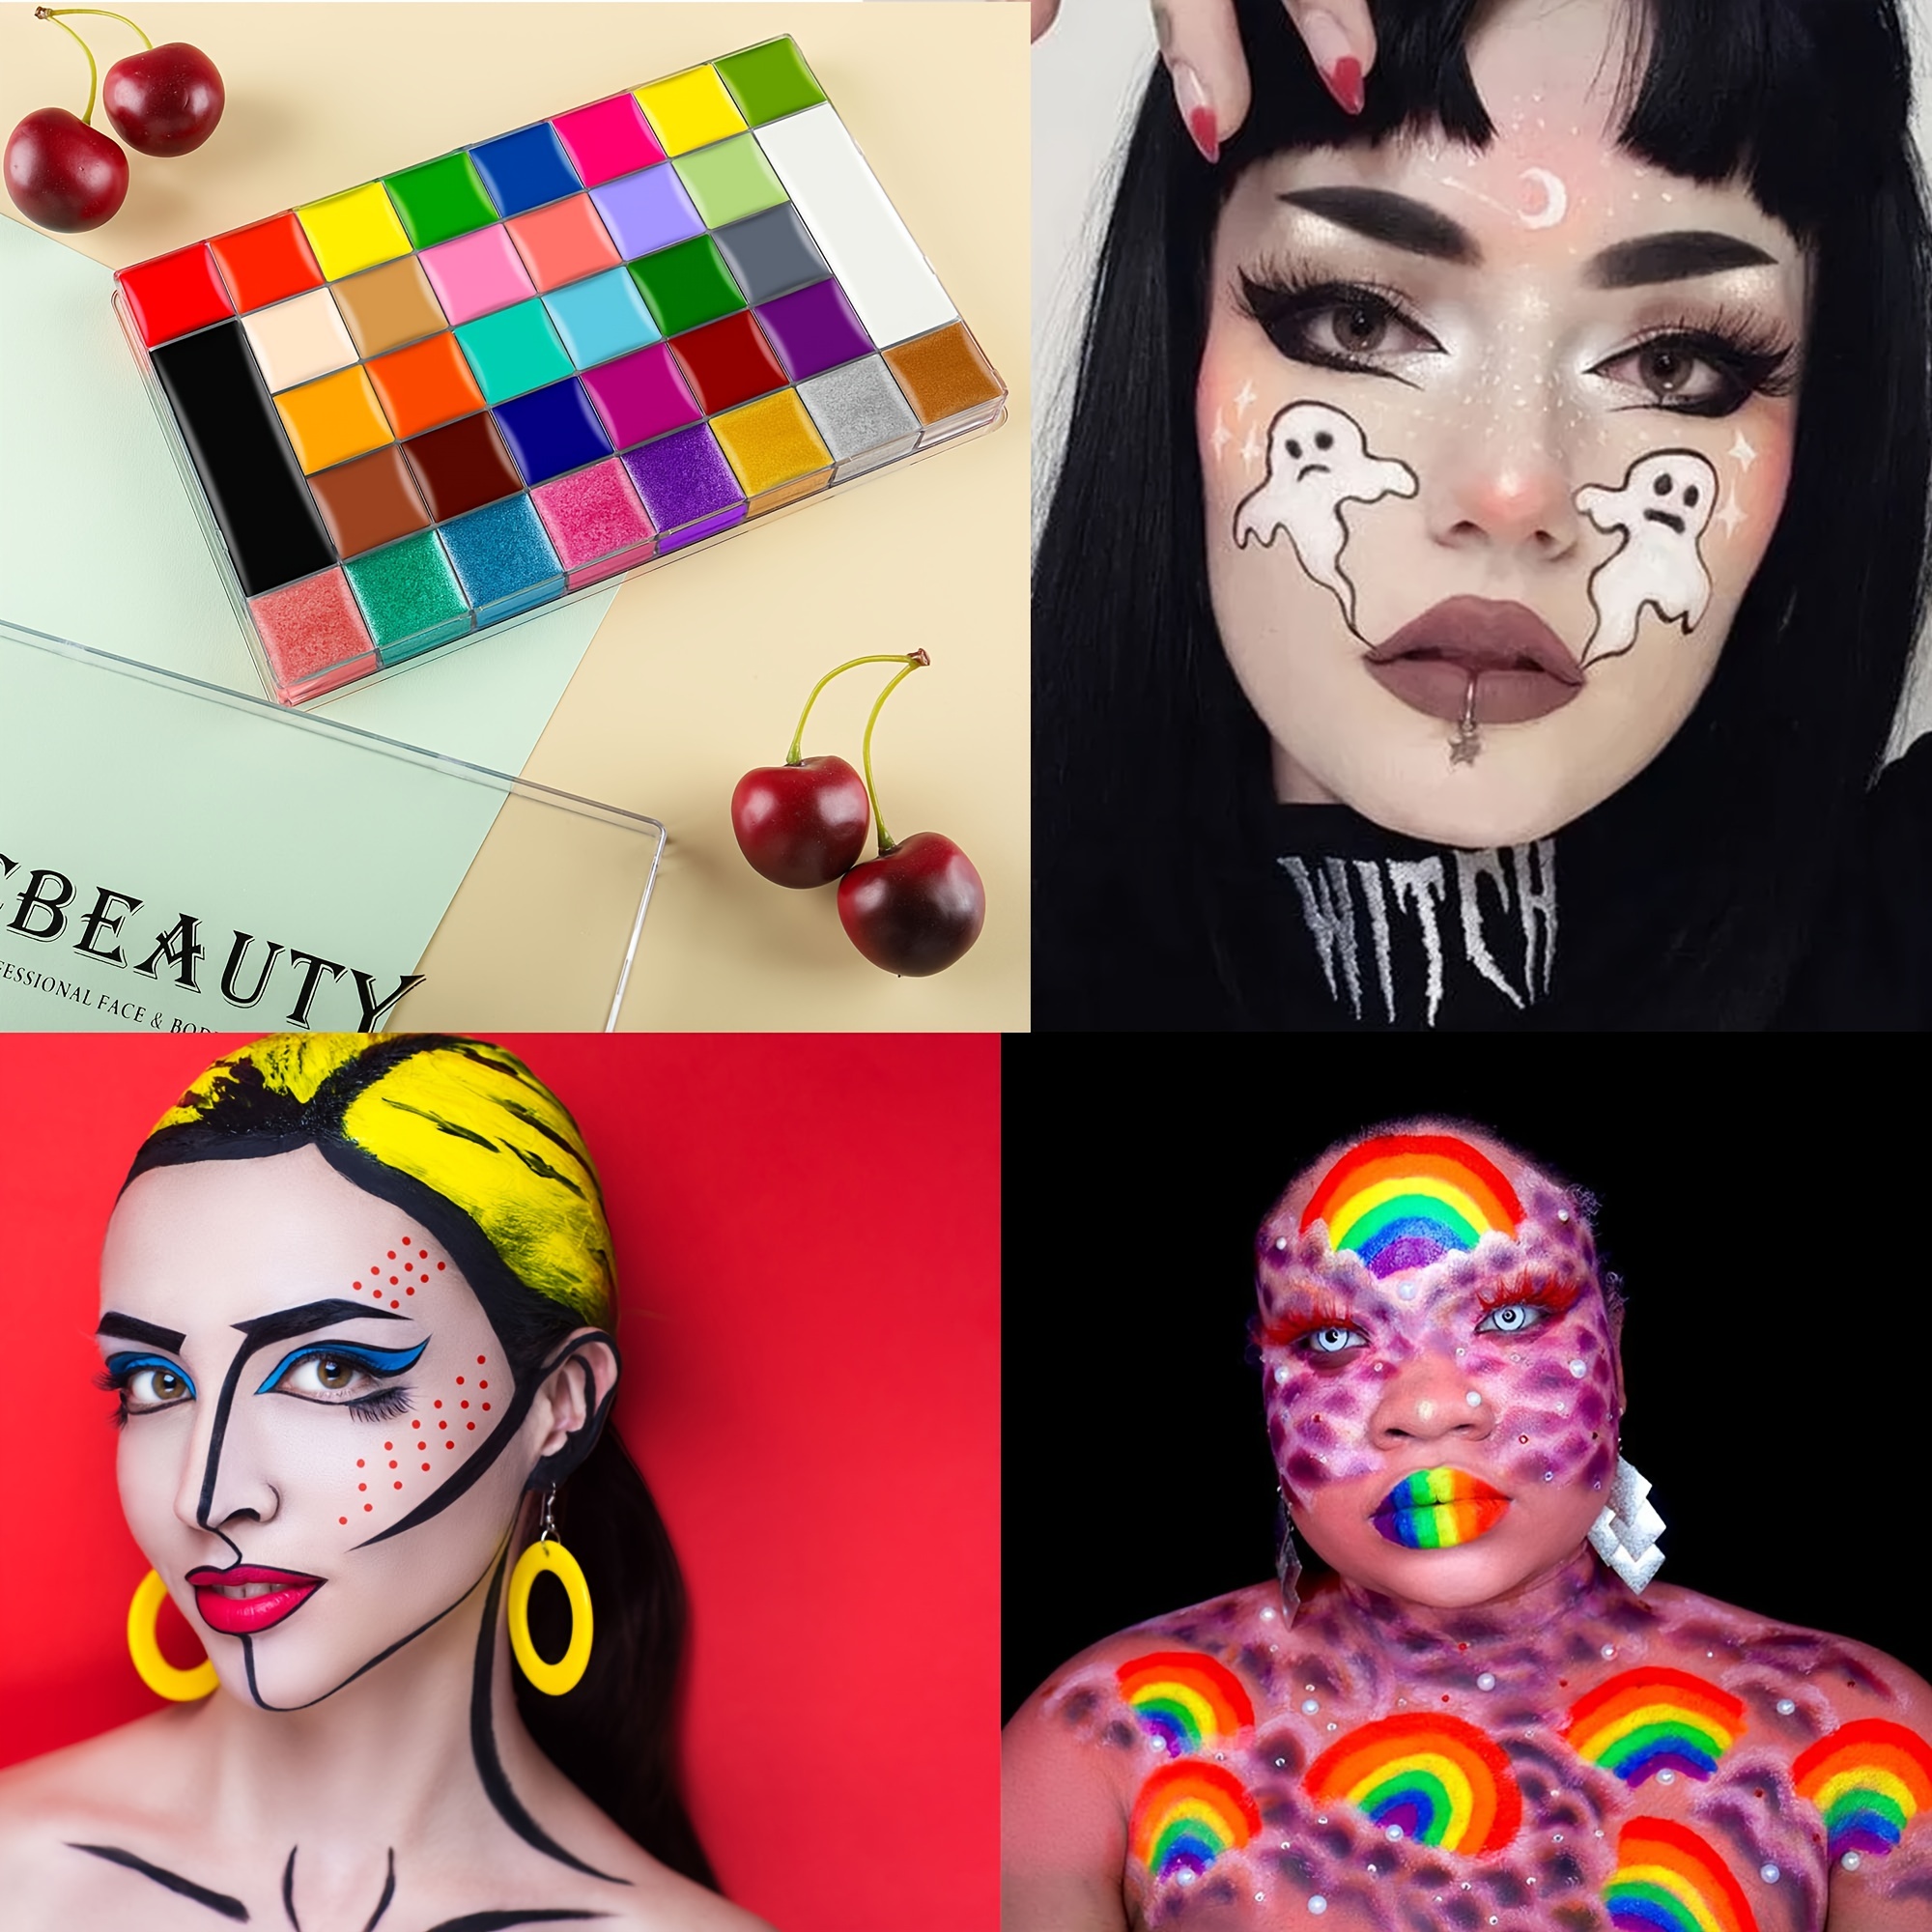 Face Paint Crayons 36 Makeup Sticks 16 Colors Face And Body - Temu Australia